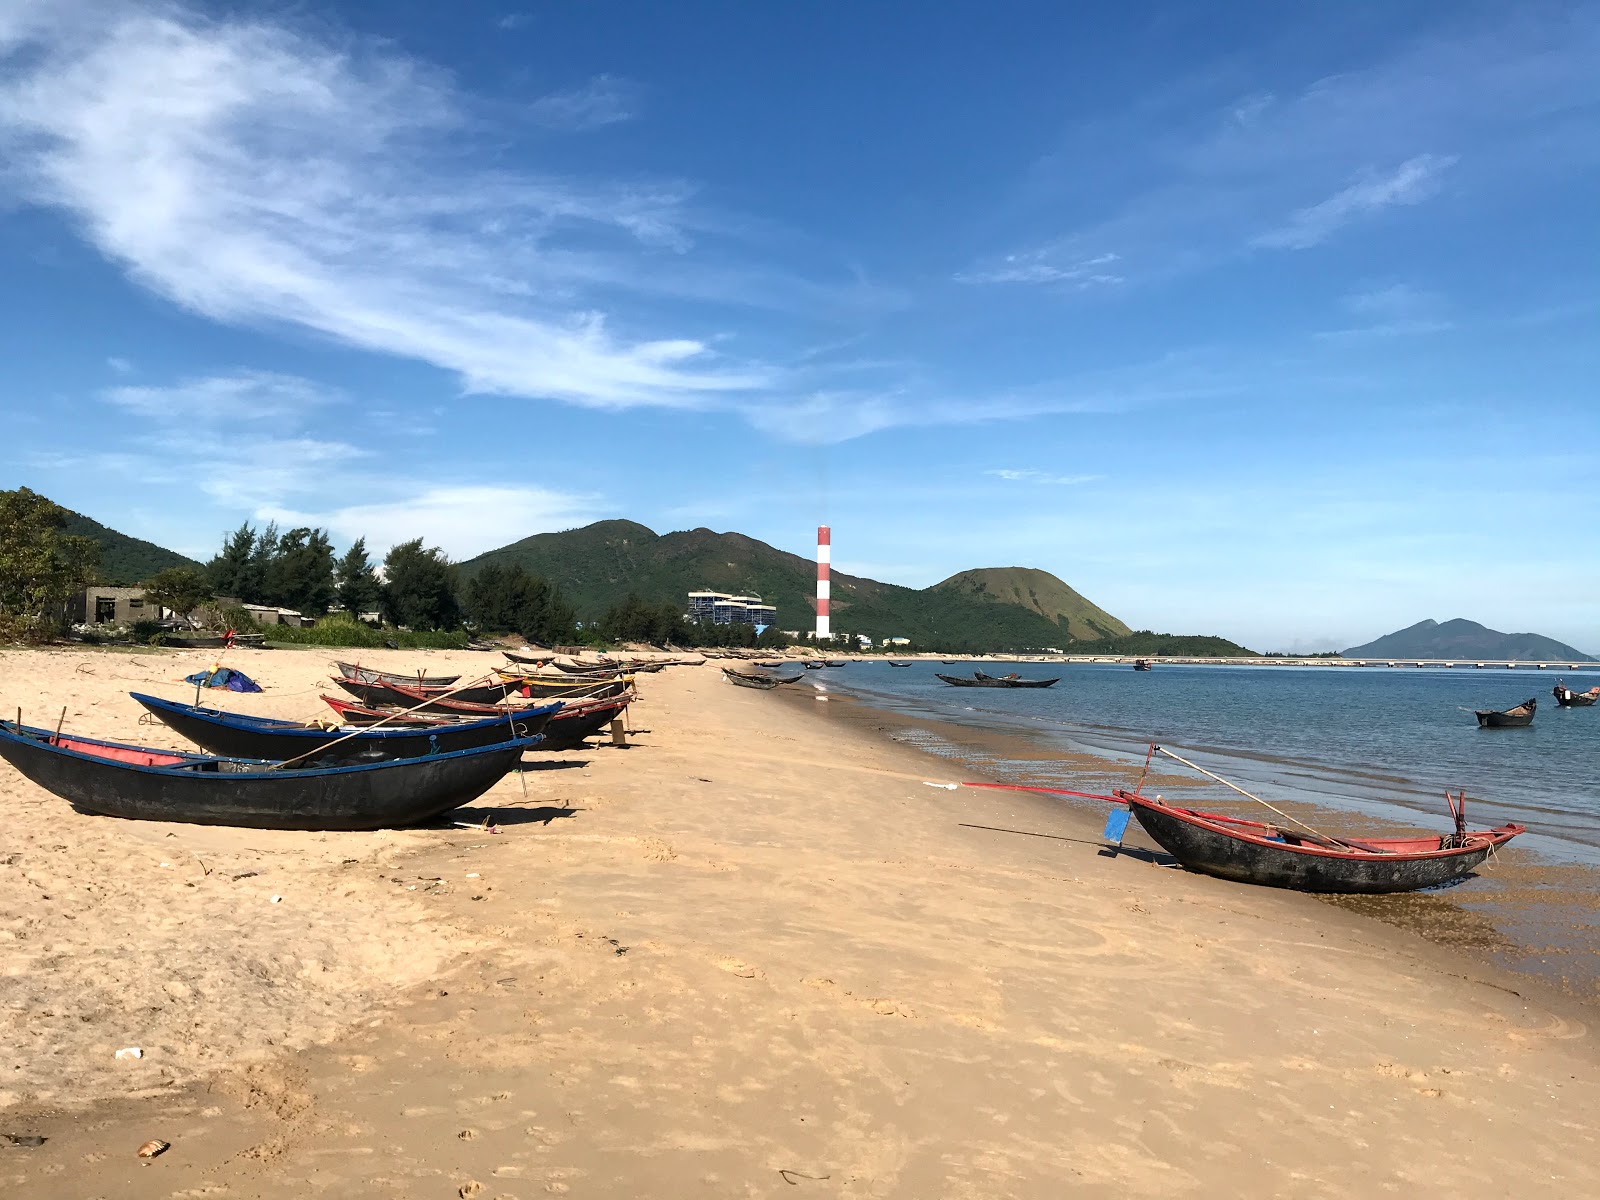 Hai Phong Beach'in fotoğrafı parlak kum yüzey ile